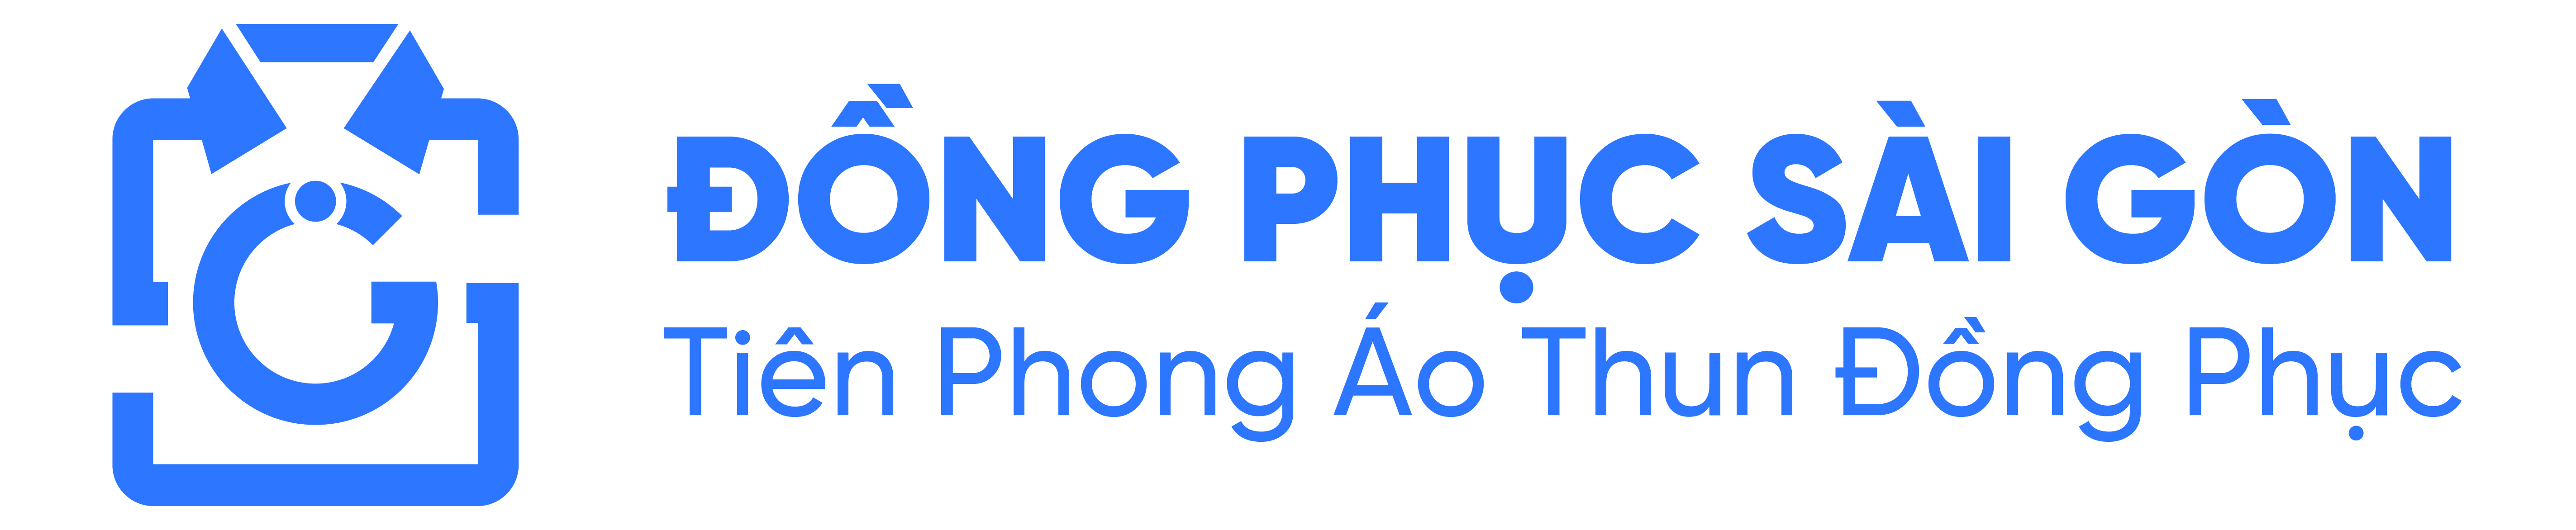 Logo Đồng Phục Sài Gòn màu xanh